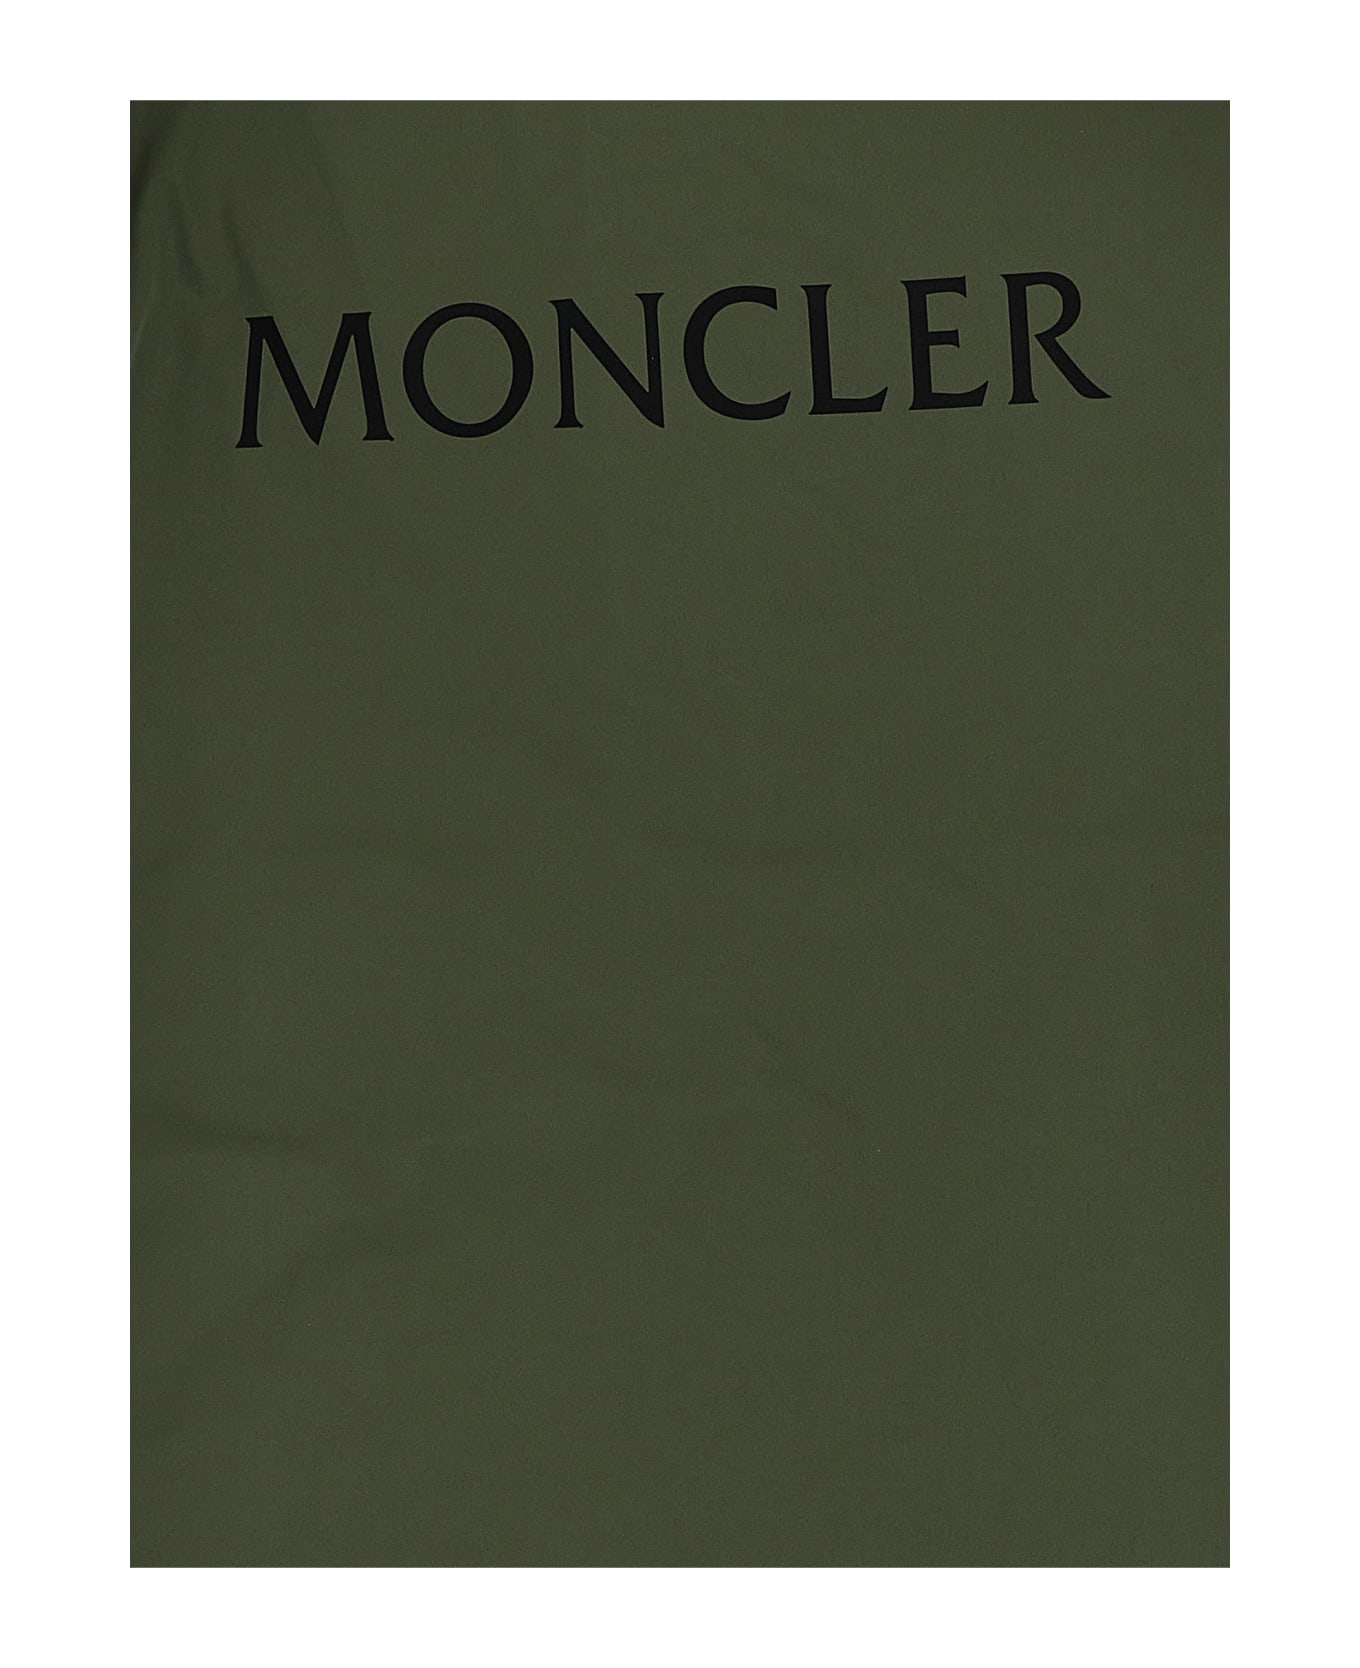 Moncler 'kayin' Jacket - Green